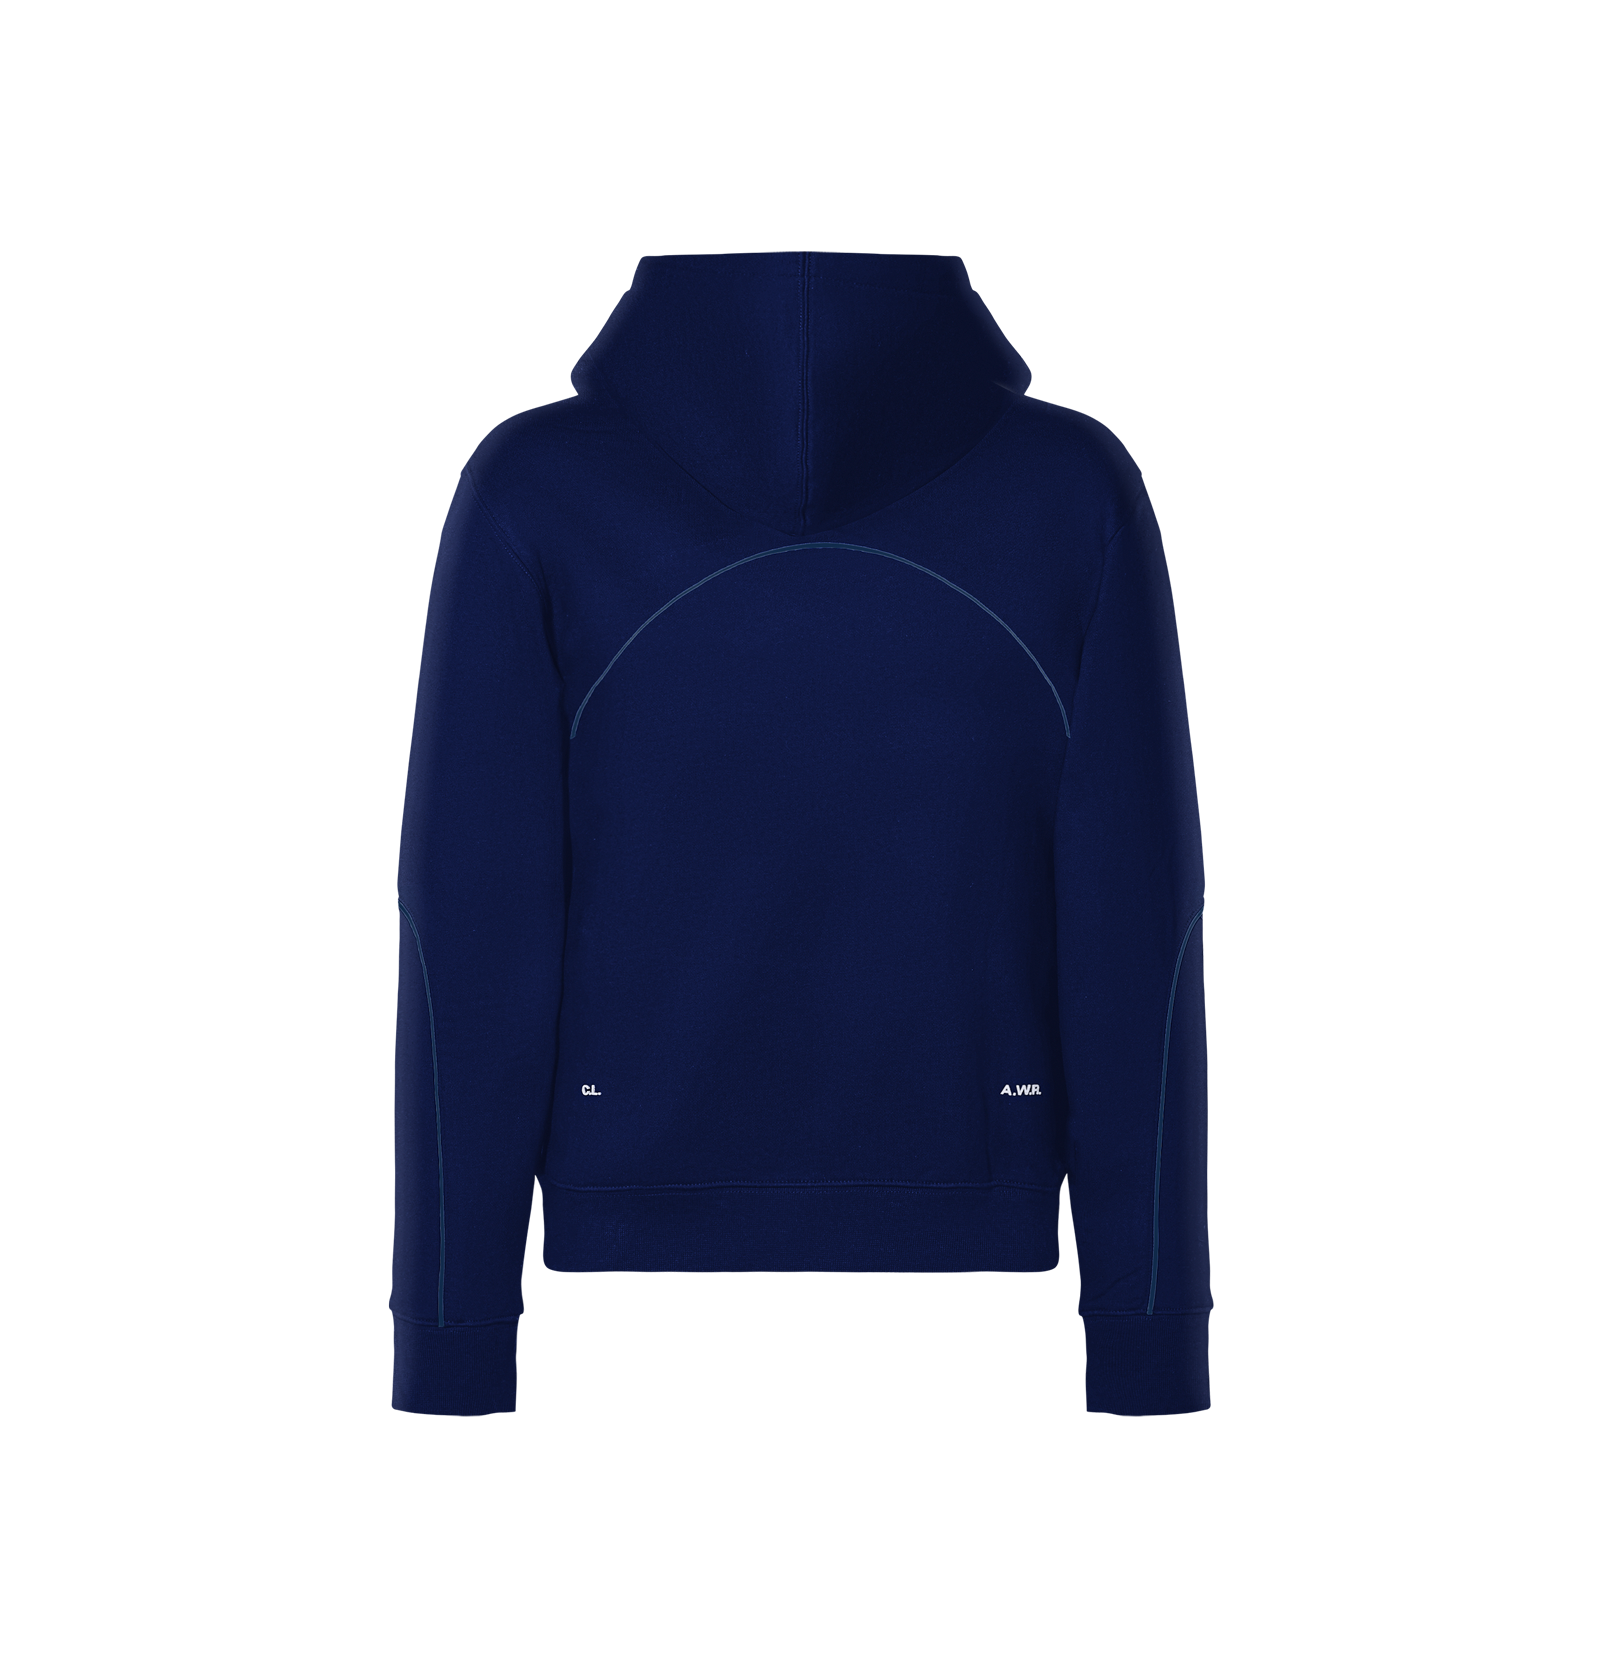 Official Hooded Sweatshirt CS Navy | NOCTA